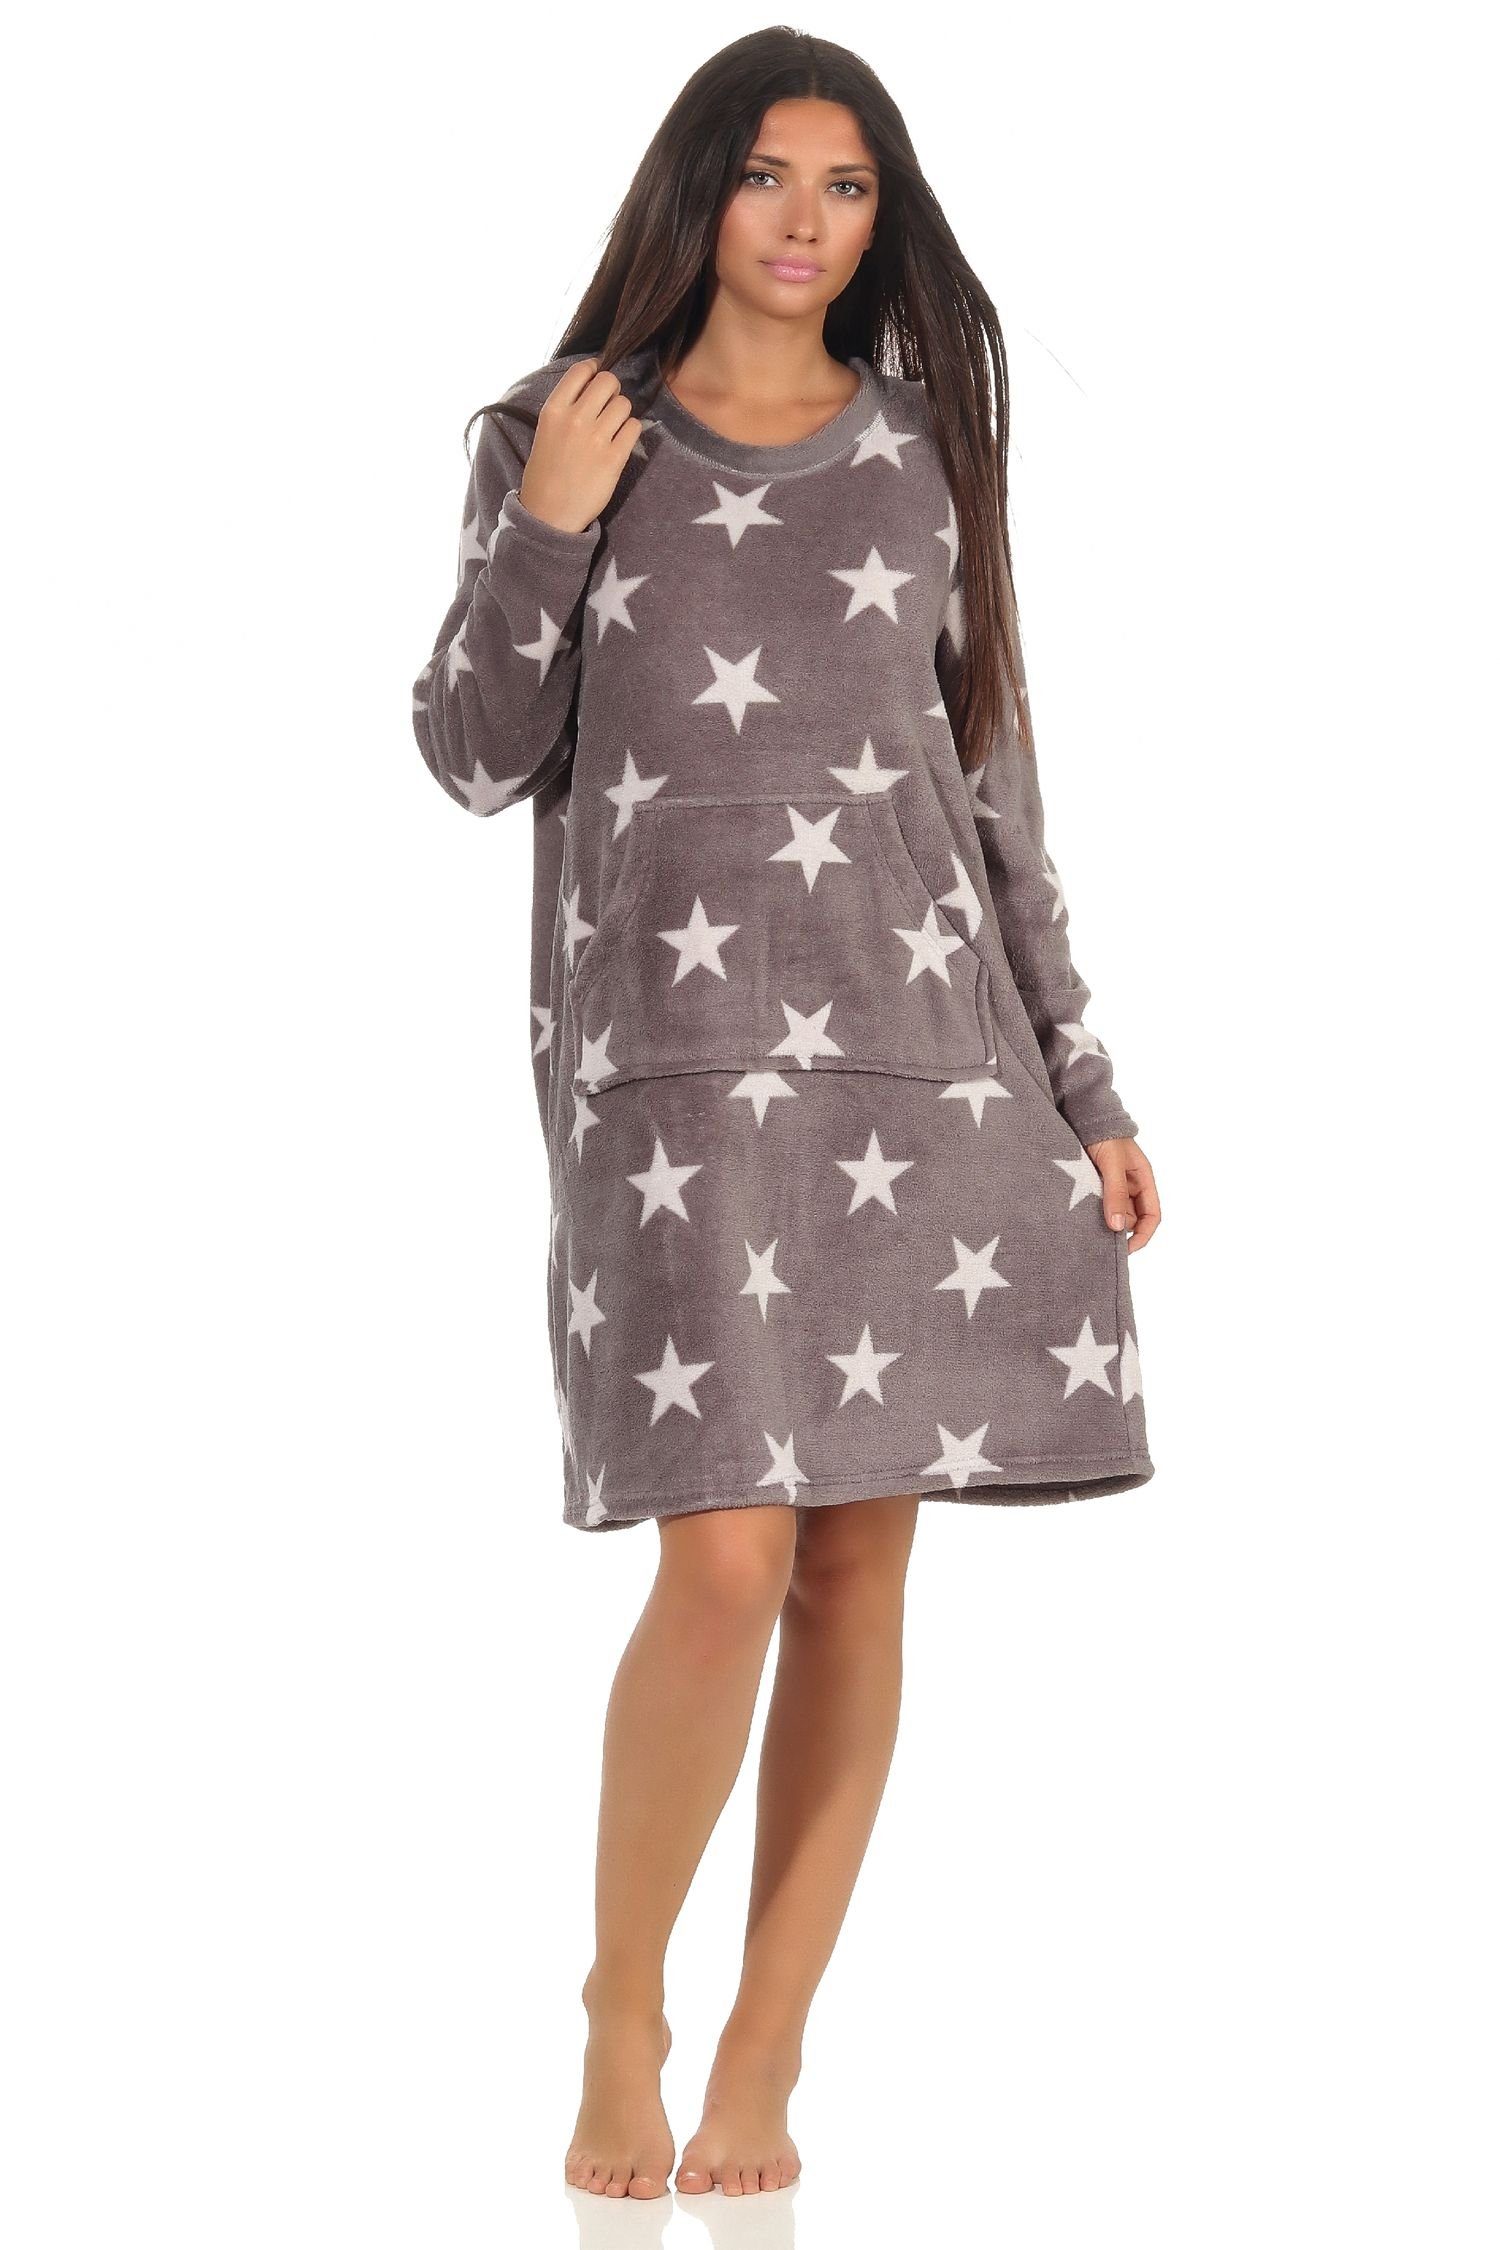 Normann Nachthemd Damen Nachthemd Hauskleid in Sterne Optik aus kuschel Coral Fleece grau